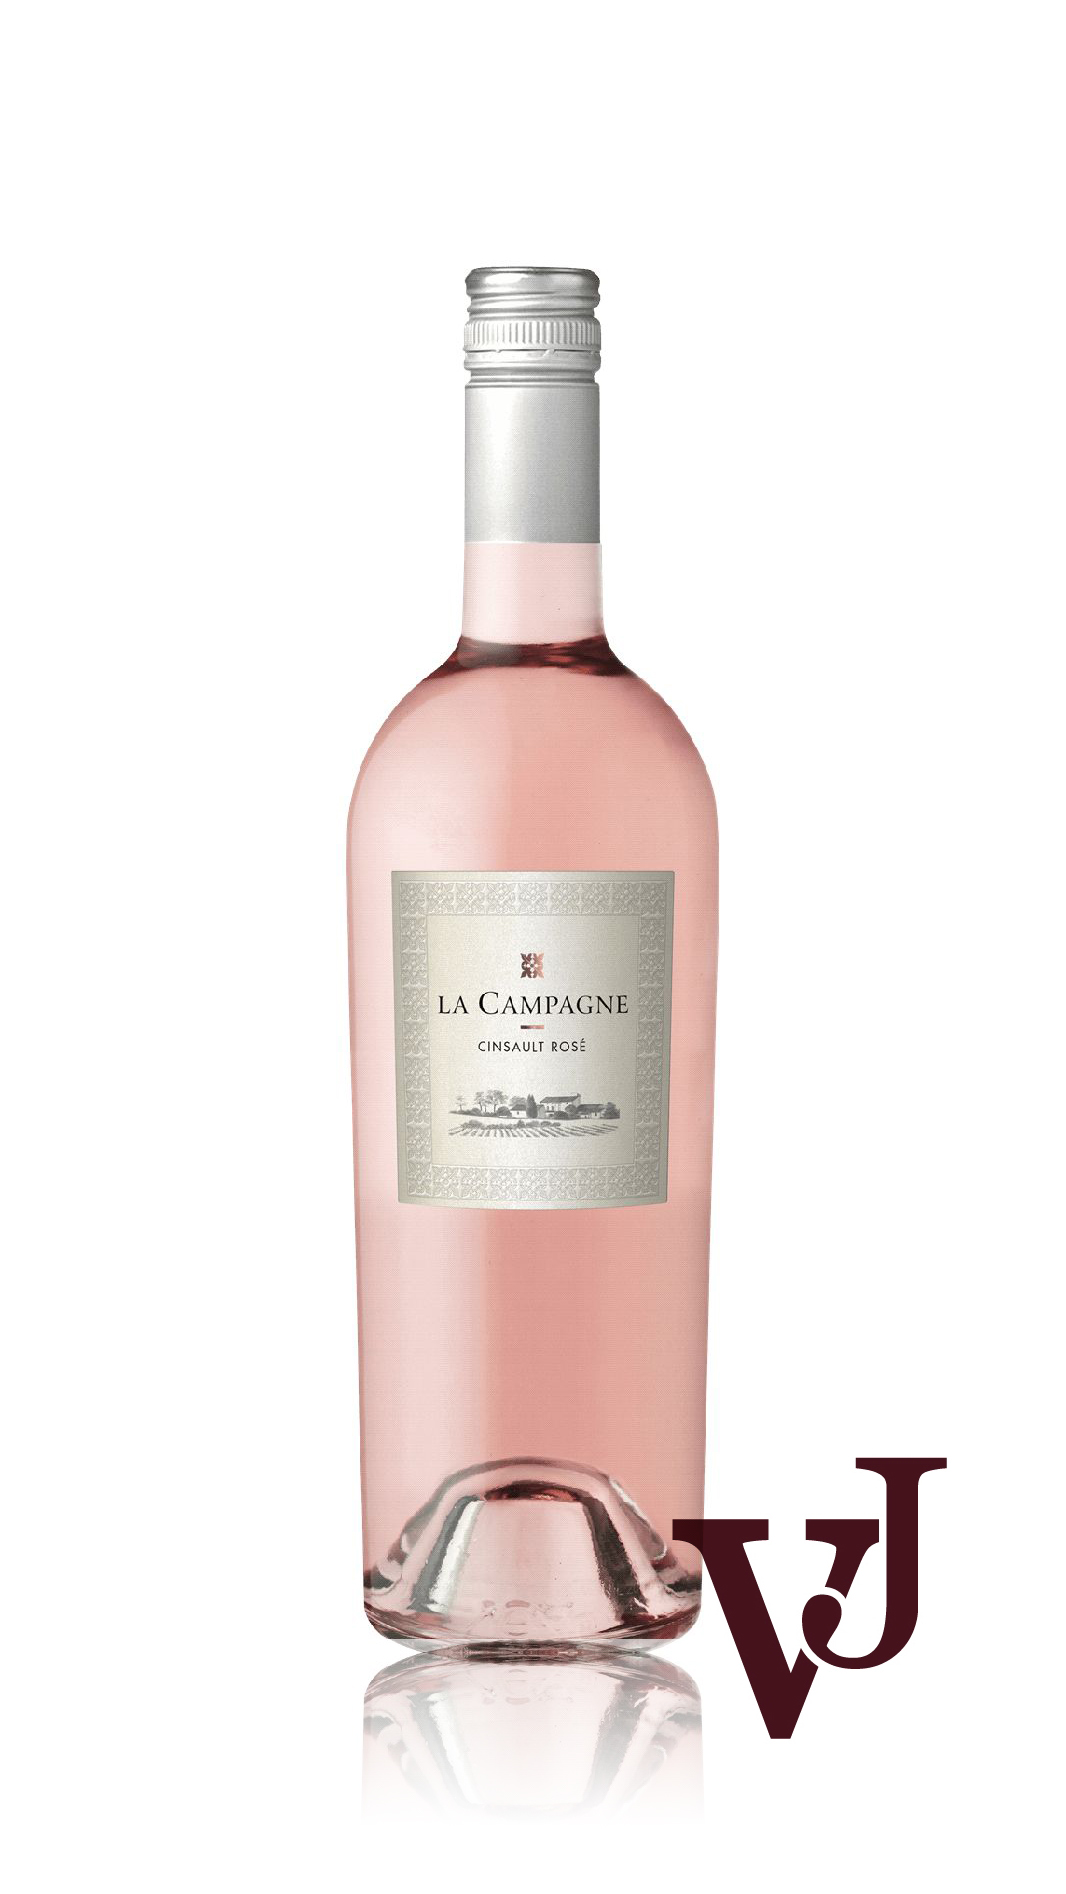 Rosé Vin - La Campagne Cinsault Rosé artikel nummer 7149601 från producenten Producteurs Réunis Ruoms från området Frankrike